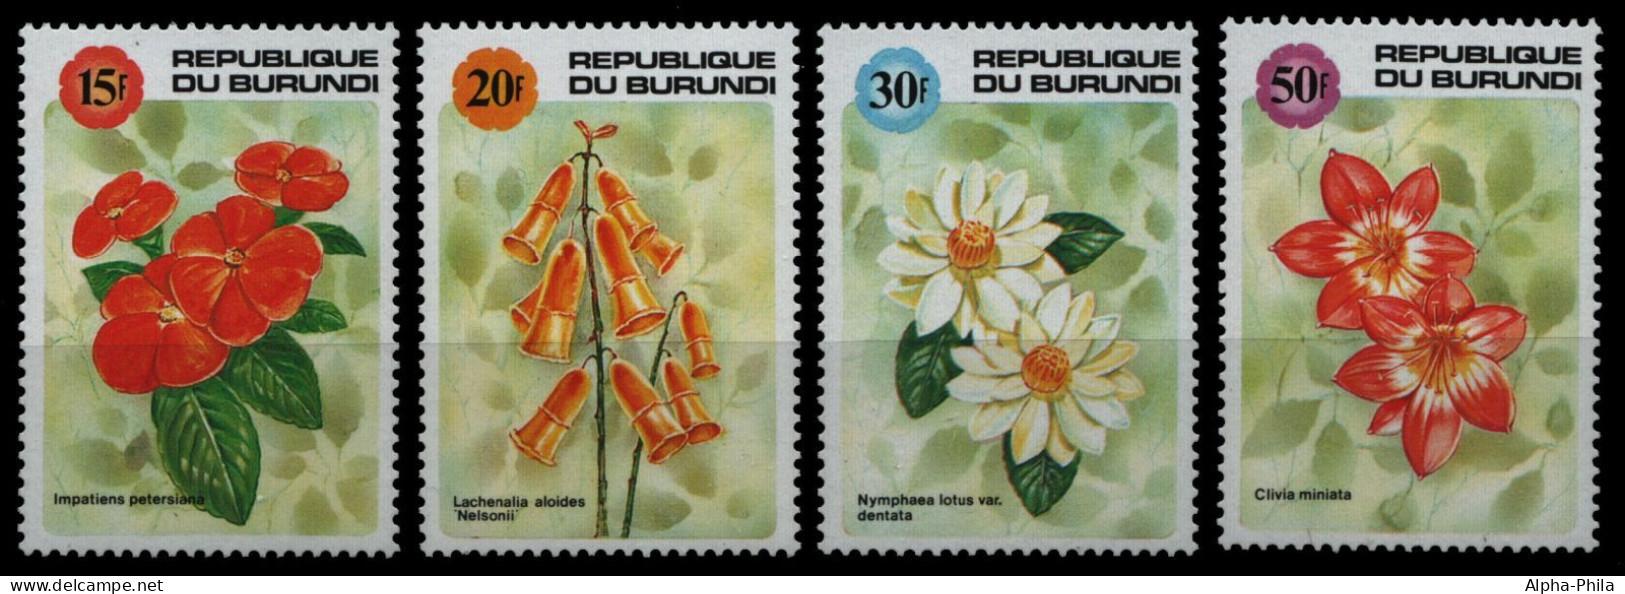 Burundi 1992 - Mi-Nr. 1726-1729 ** - MNH - Blumen / Flowers - Ungebraucht